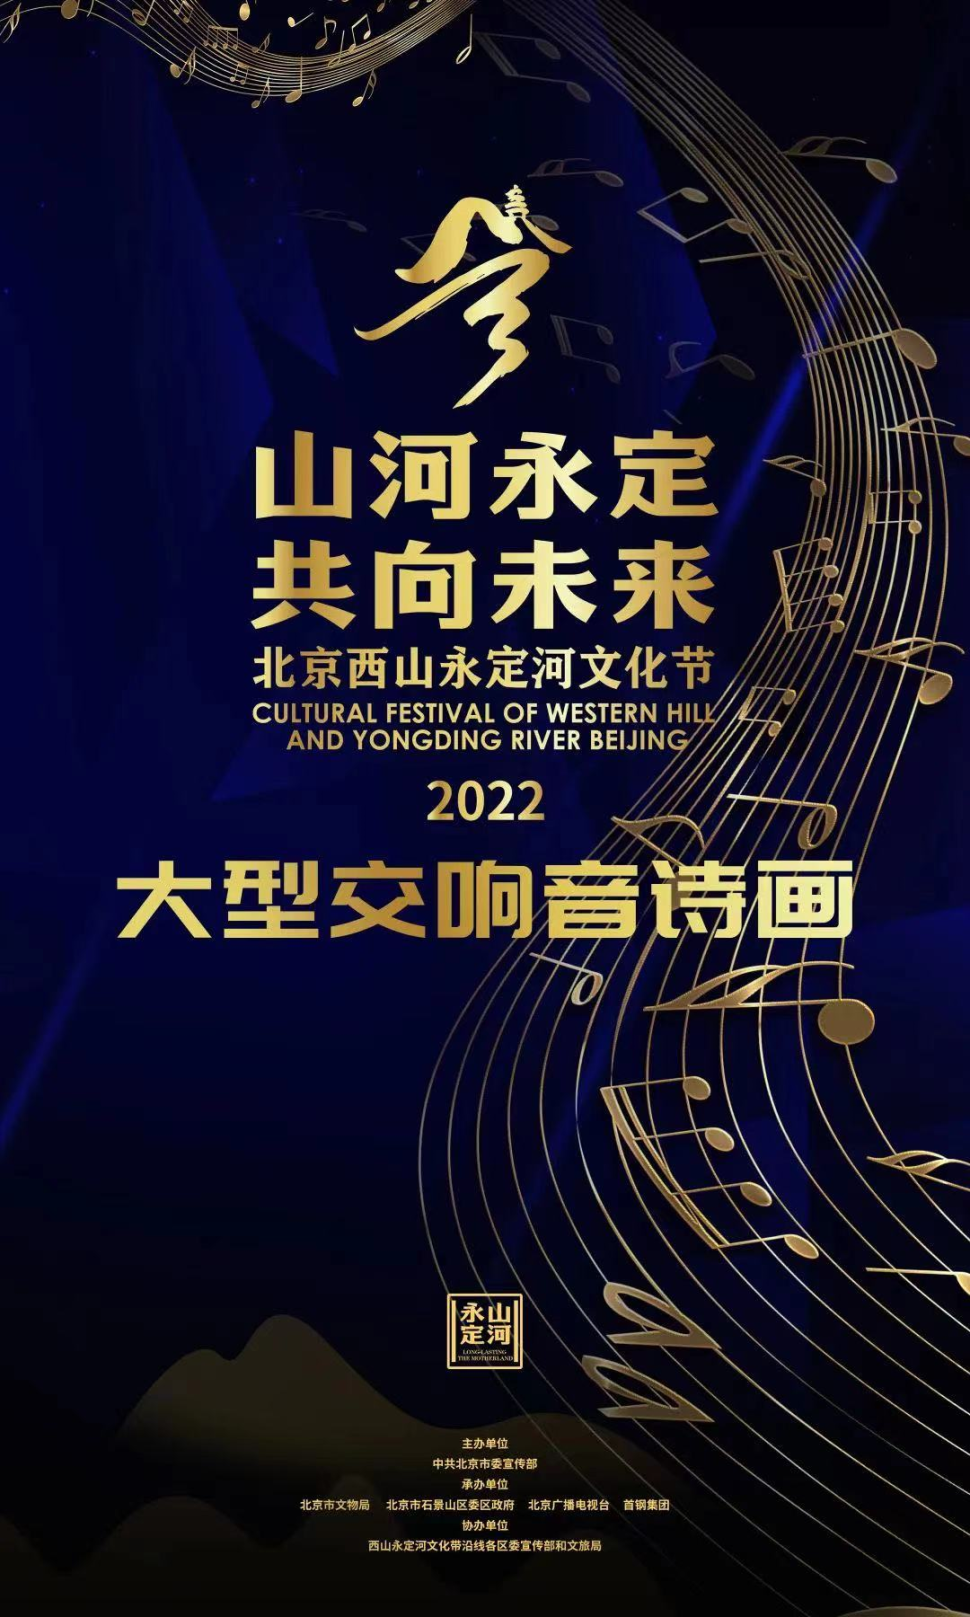 2022年北京西山永定河文化節開幕式暨“山河永定 共向未來”大型交響音詩畫即將開啟